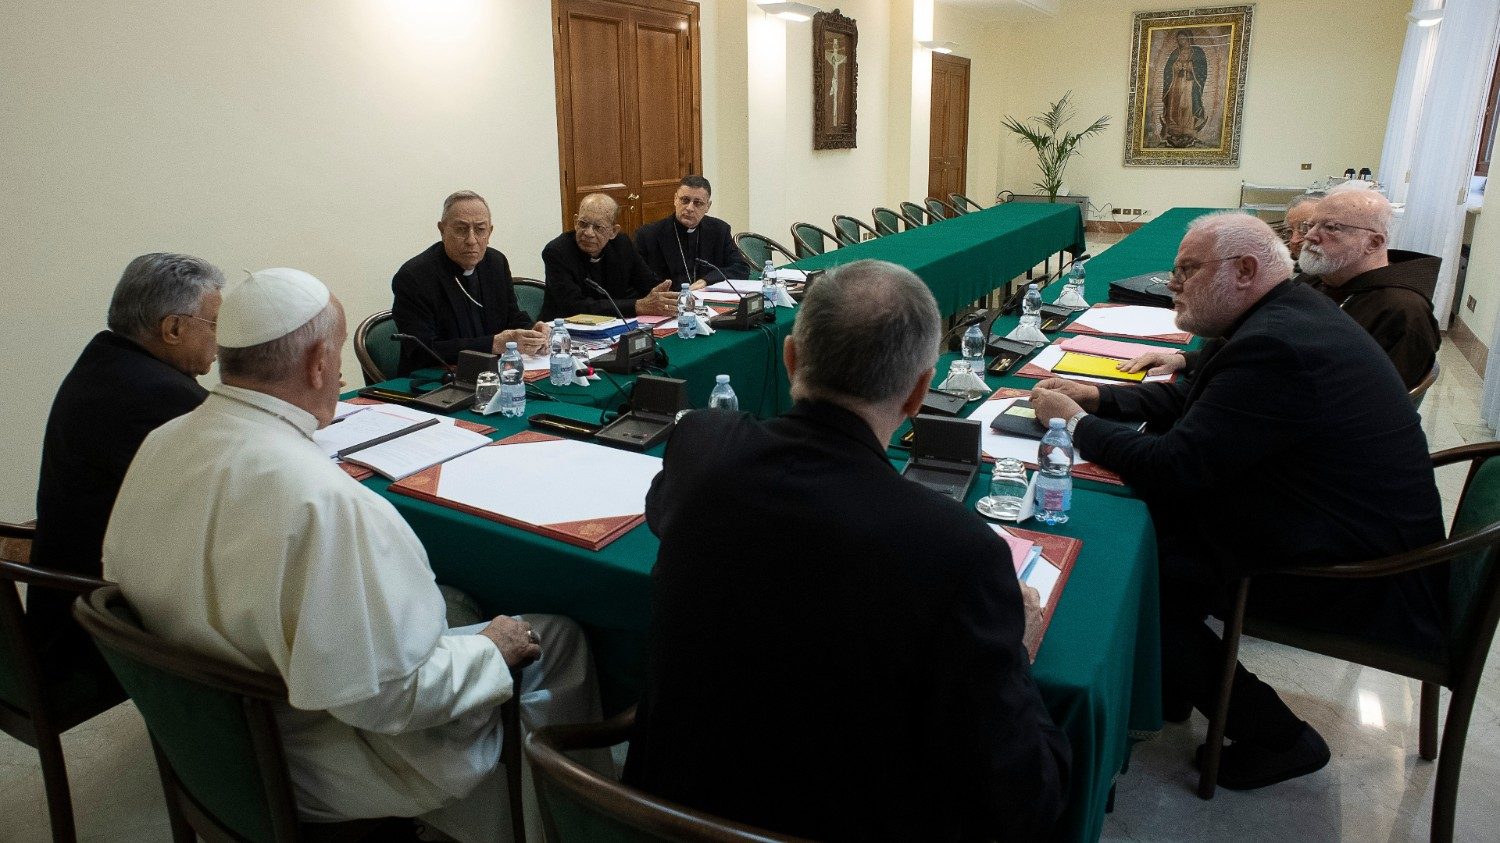 Francisco y el C6, tres nuevos días de encuentro - Vatican News